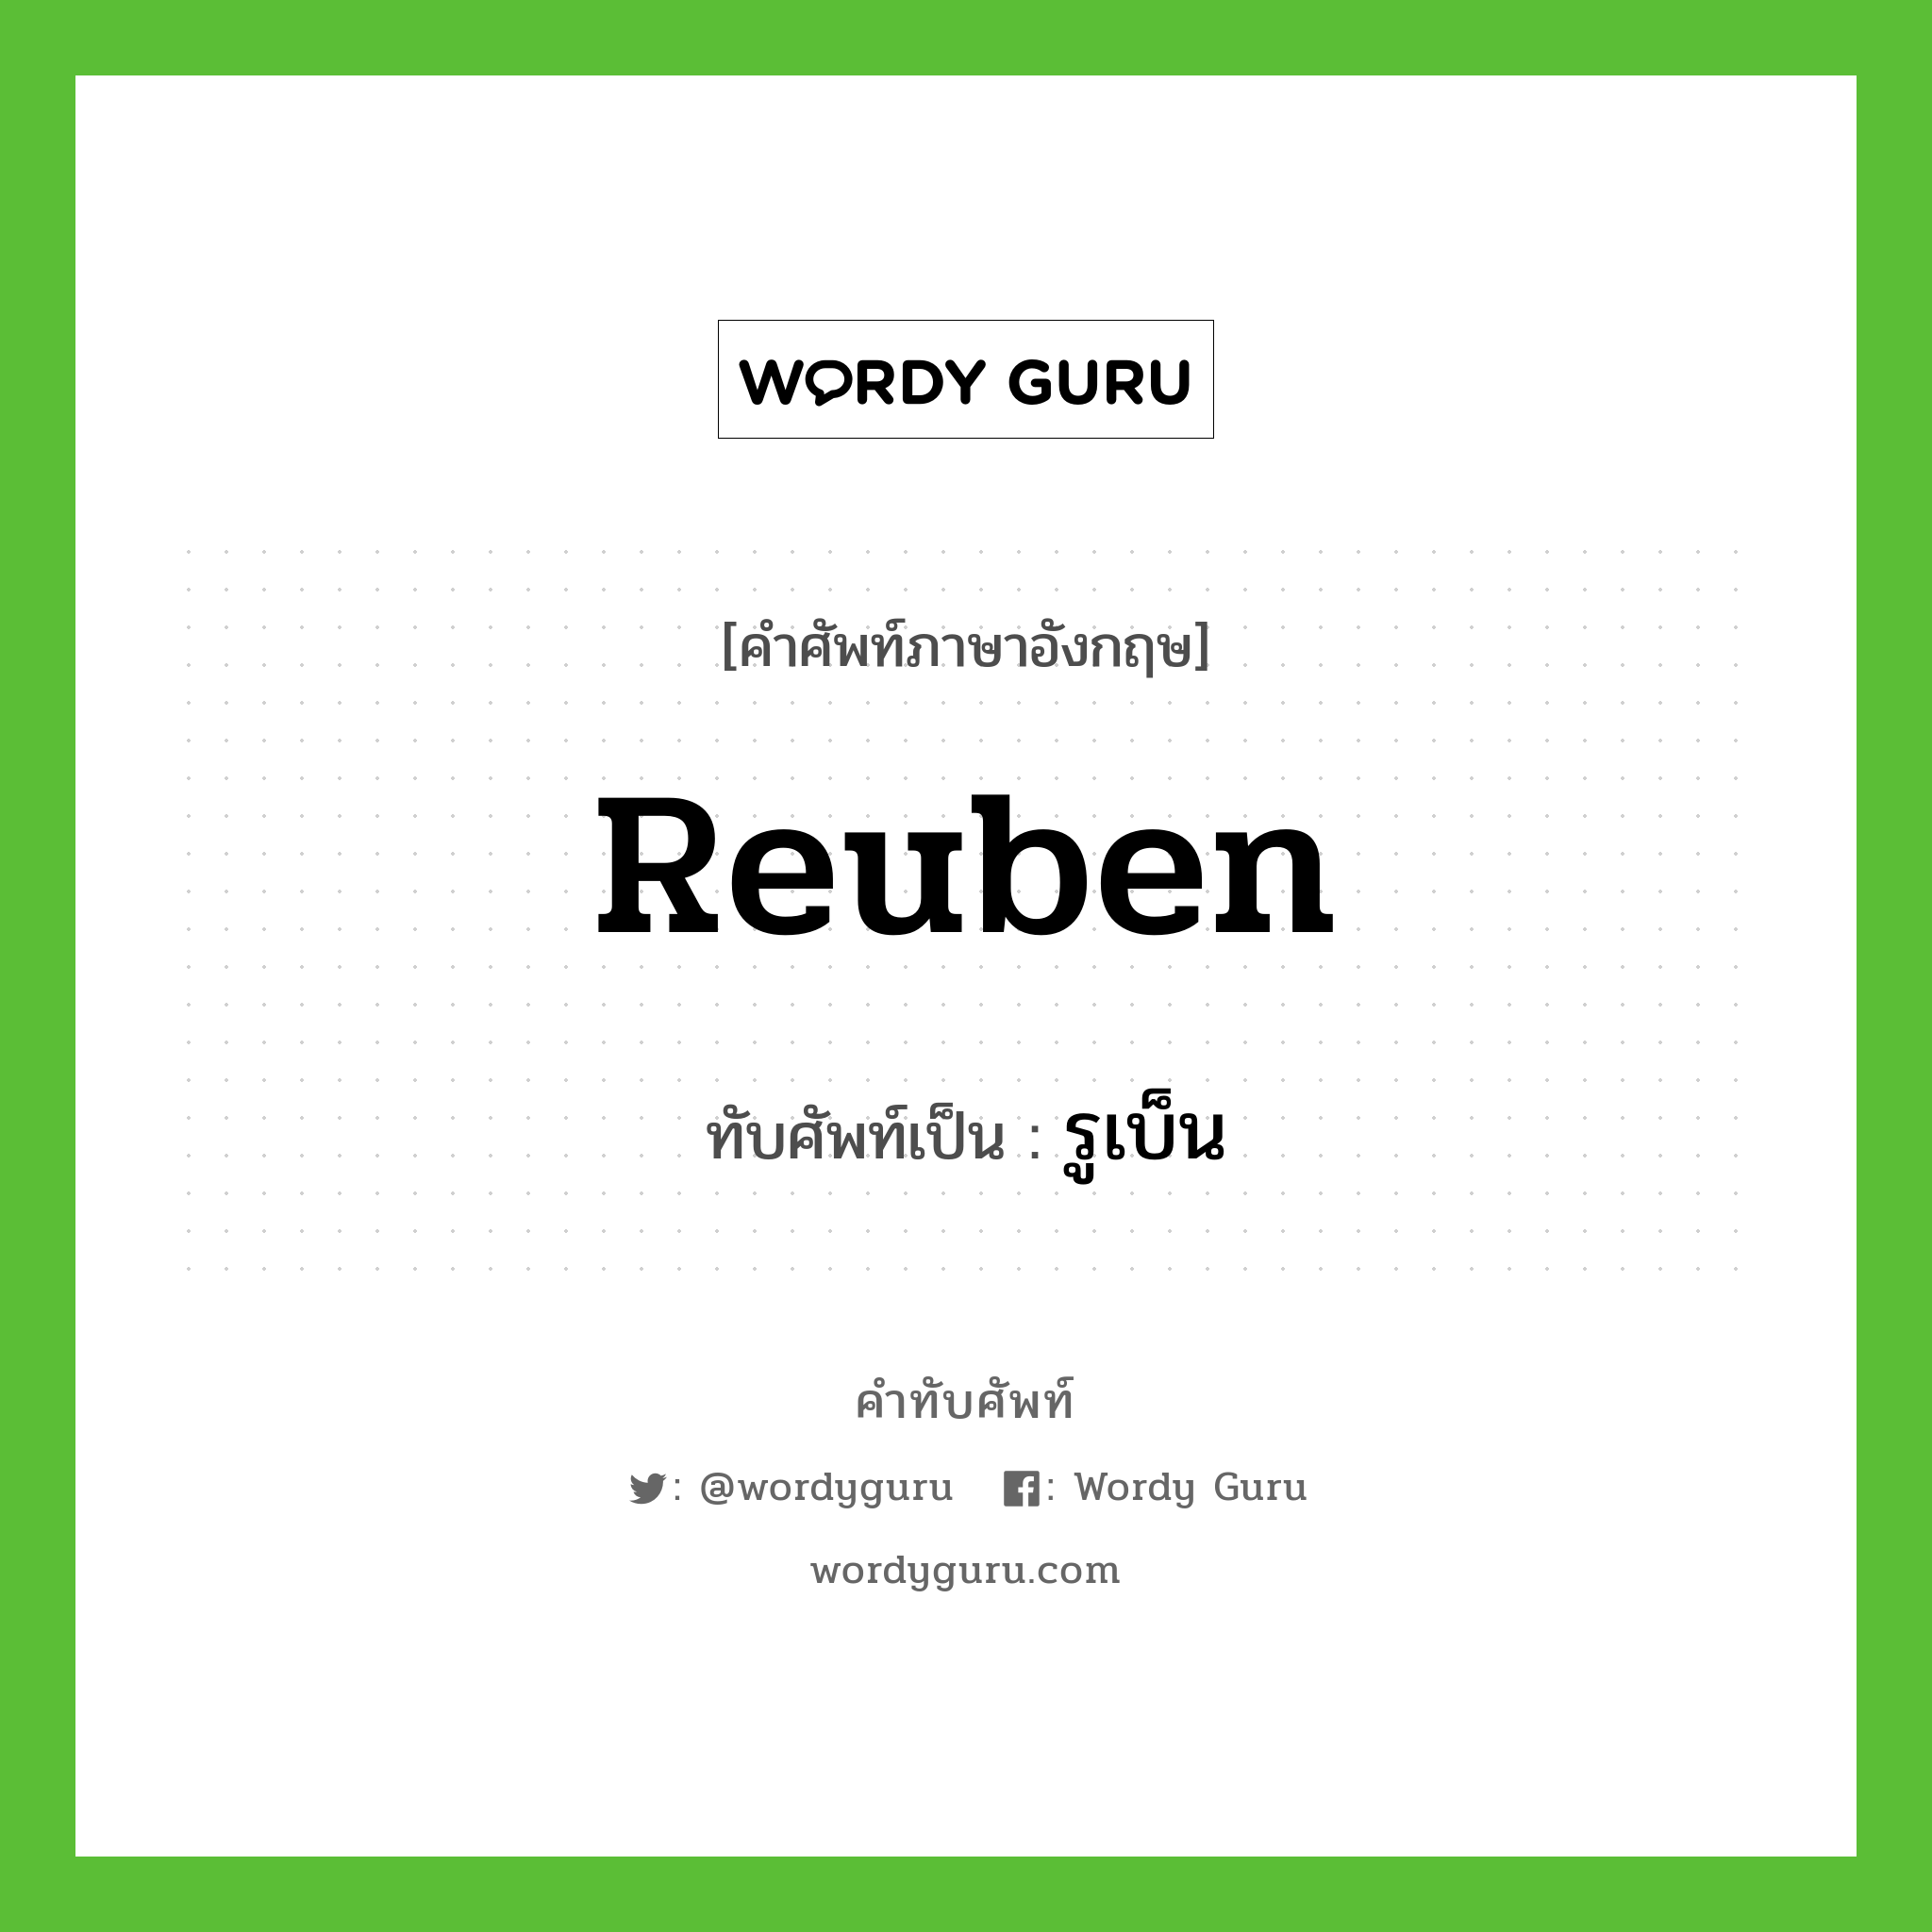 Reuben เขียนเป็นคำไทยว่าอะไร?, คำศัพท์ภาษาอังกฤษ Reuben ทับศัพท์เป็น รูเบ็น